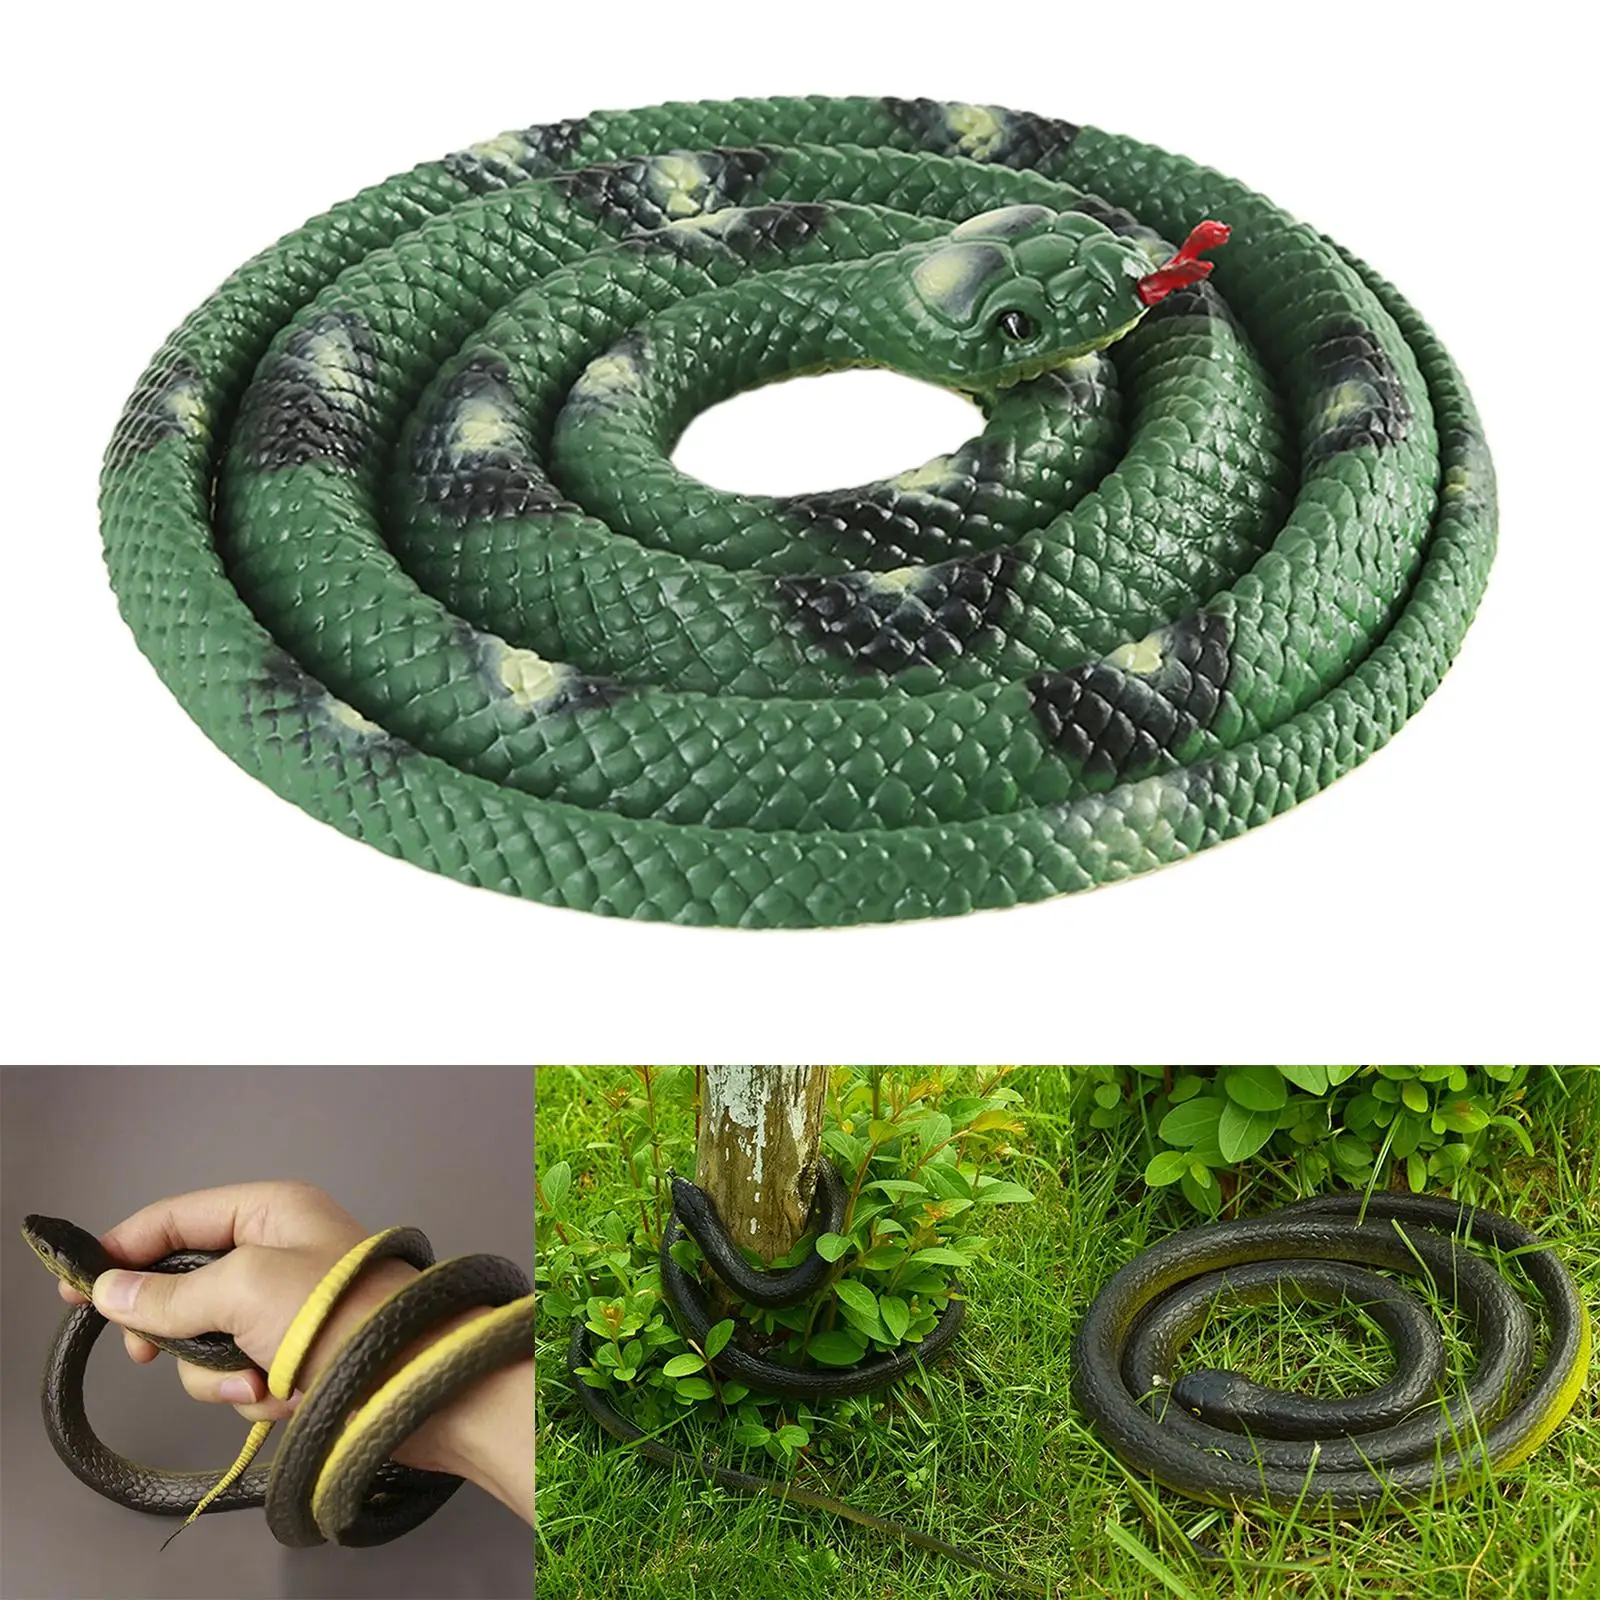 120cm Large Soft Lifelike Rubber Snake Toys Garden Props for Kids Joke Toy 